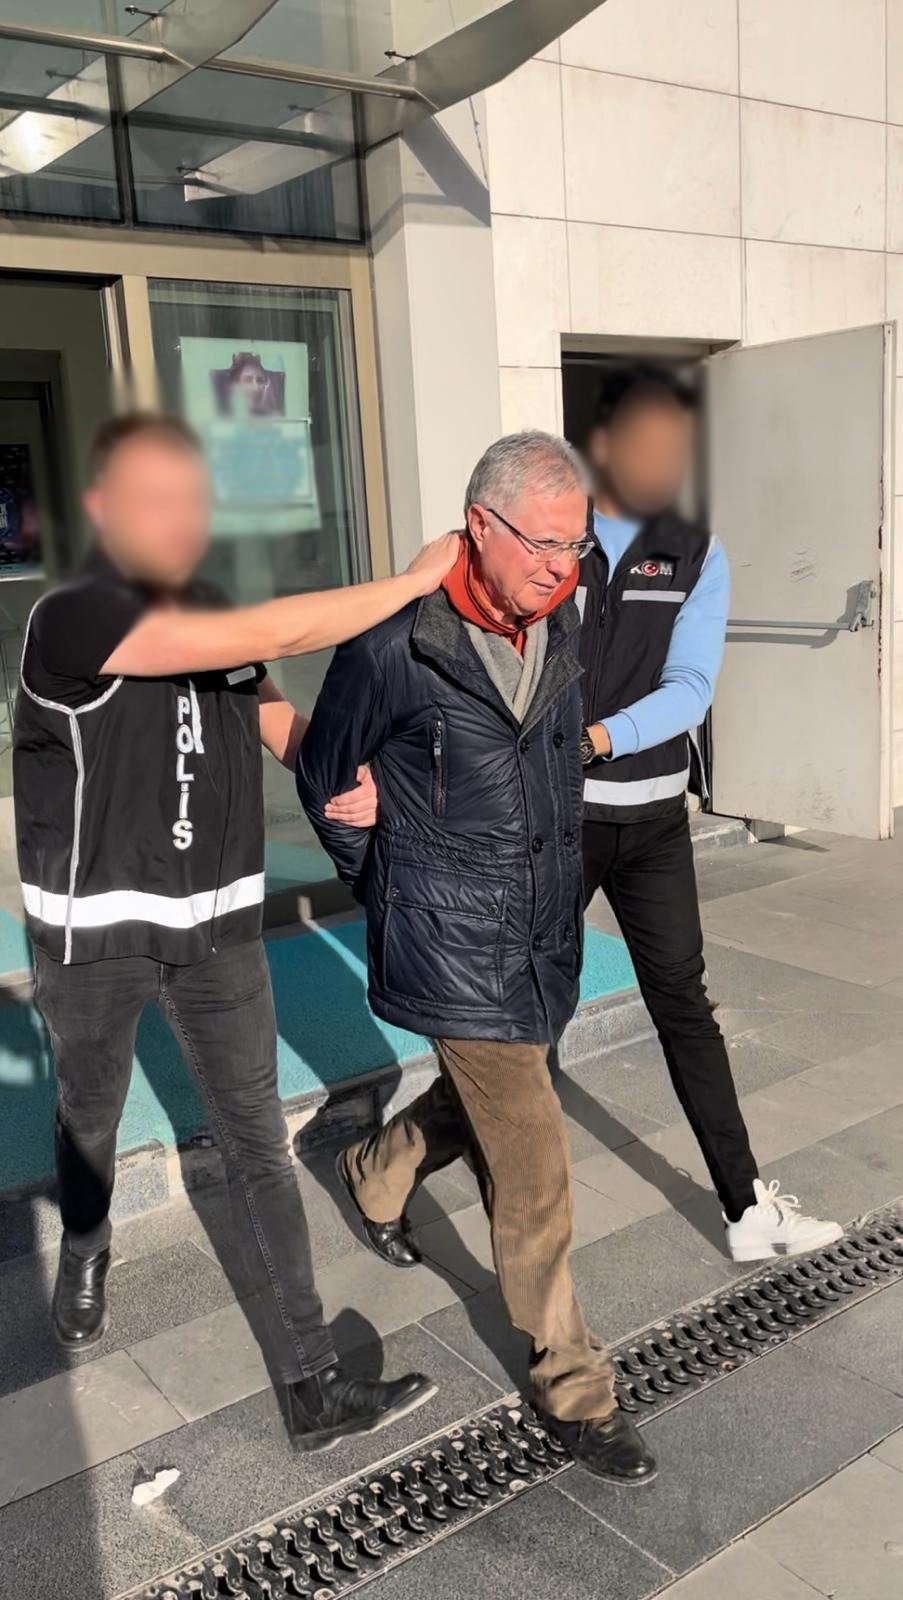 FETÖ firarisi eski emniyet müdürü Ankara'da yakalandı